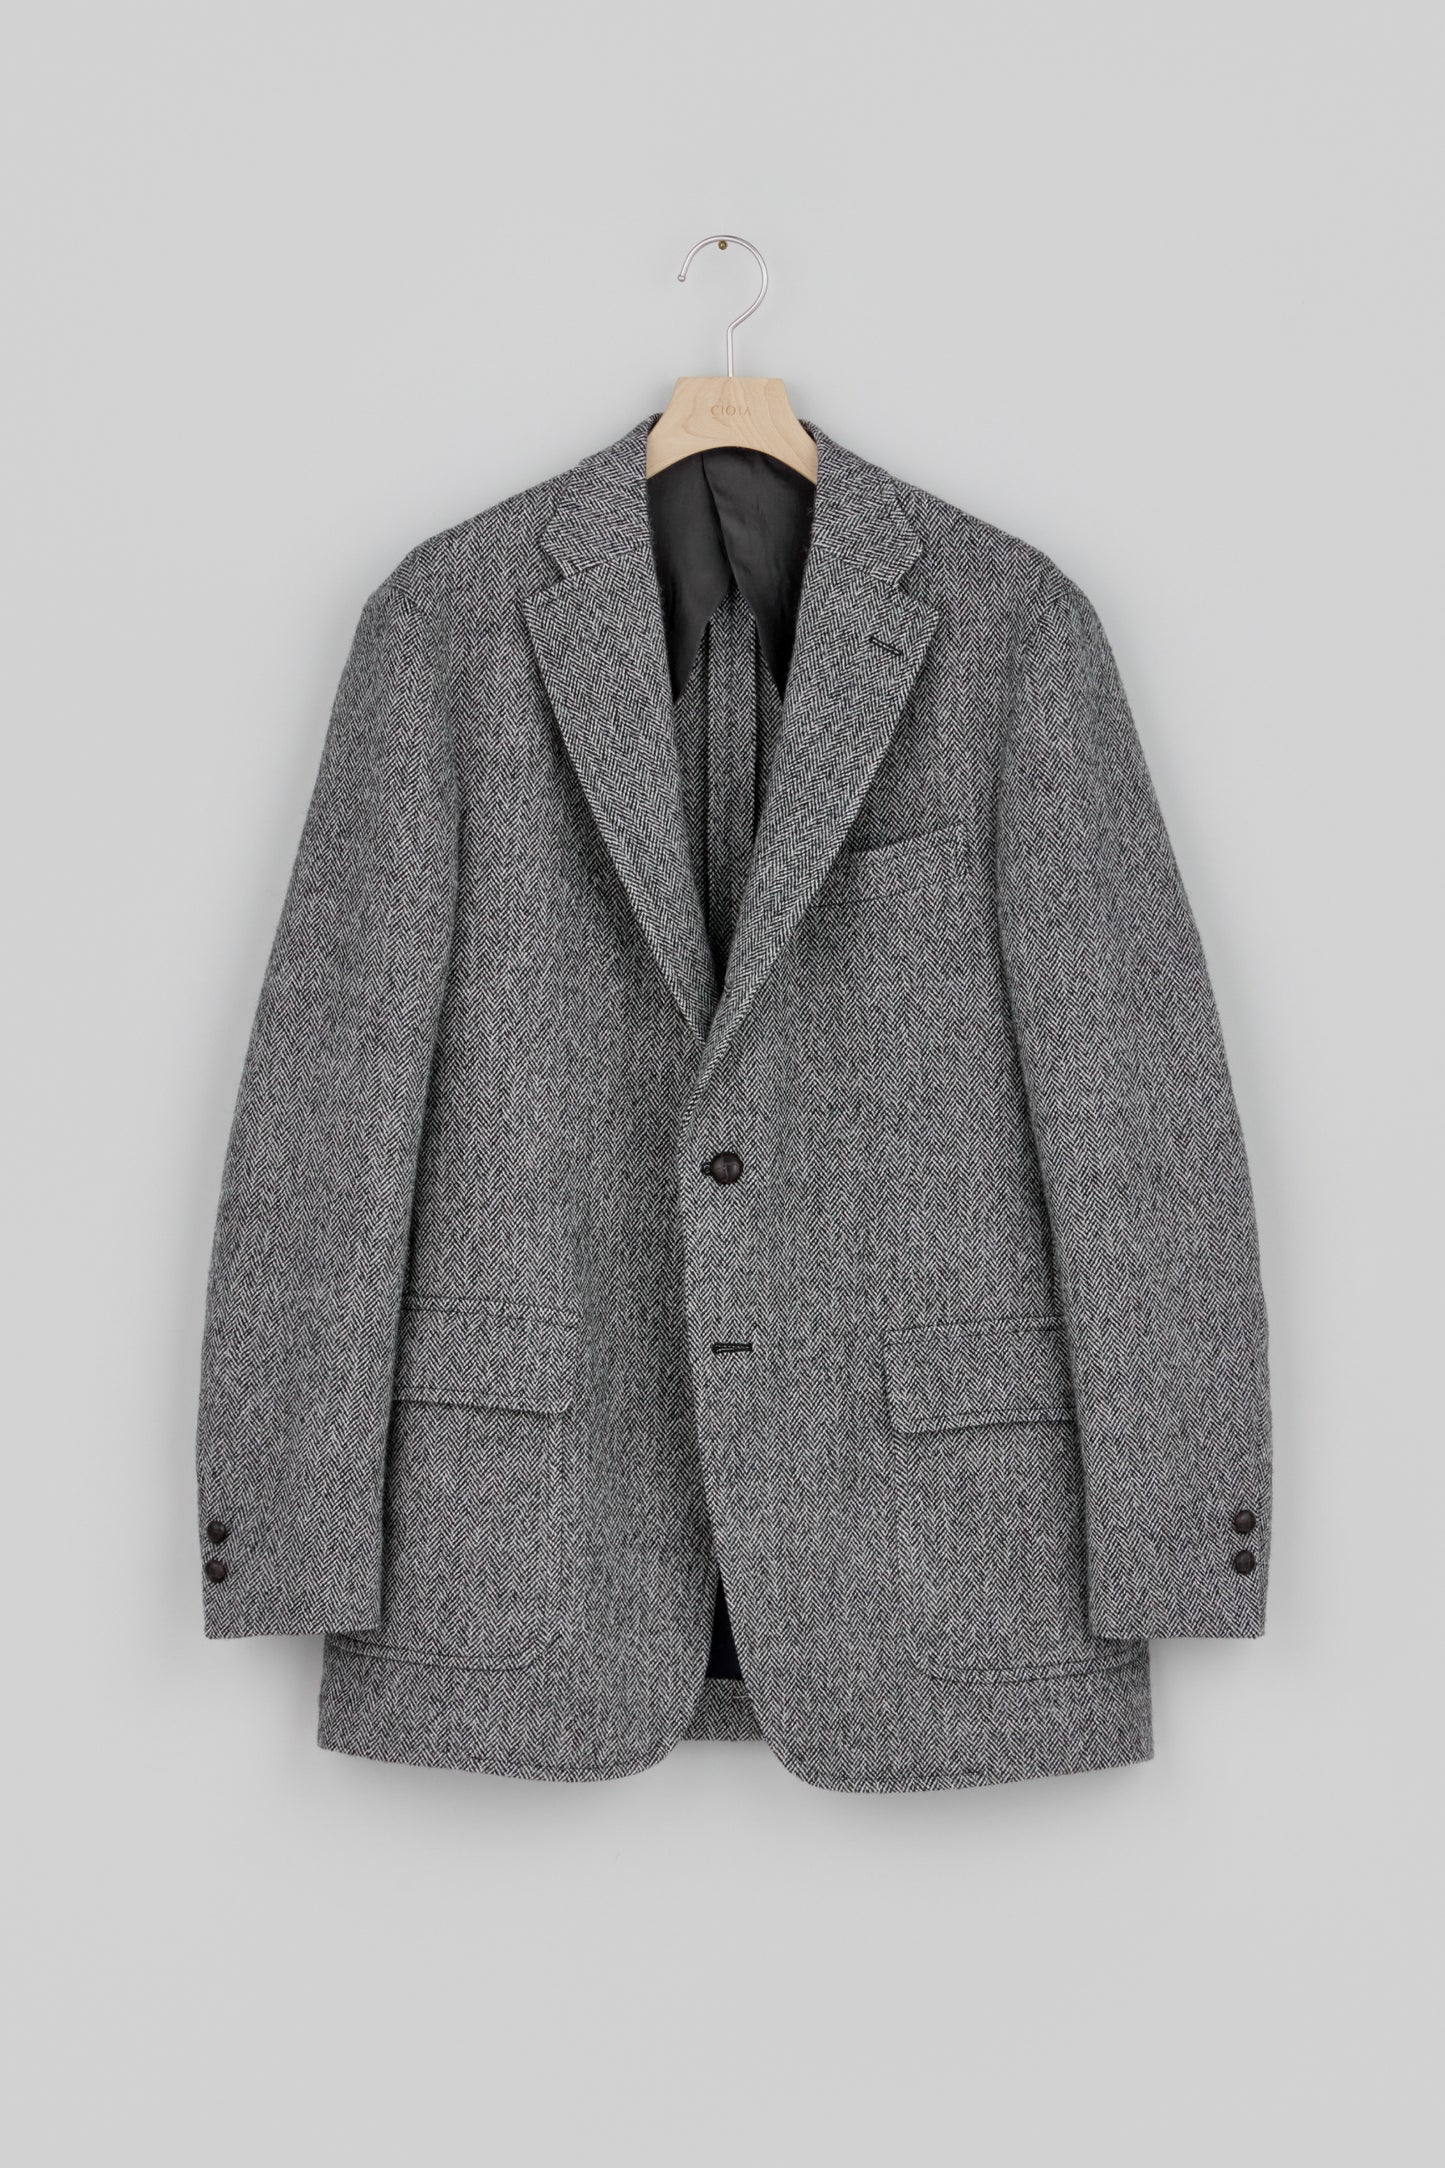 CIOTA × J.PRESS Herringbone Tweed Jacket